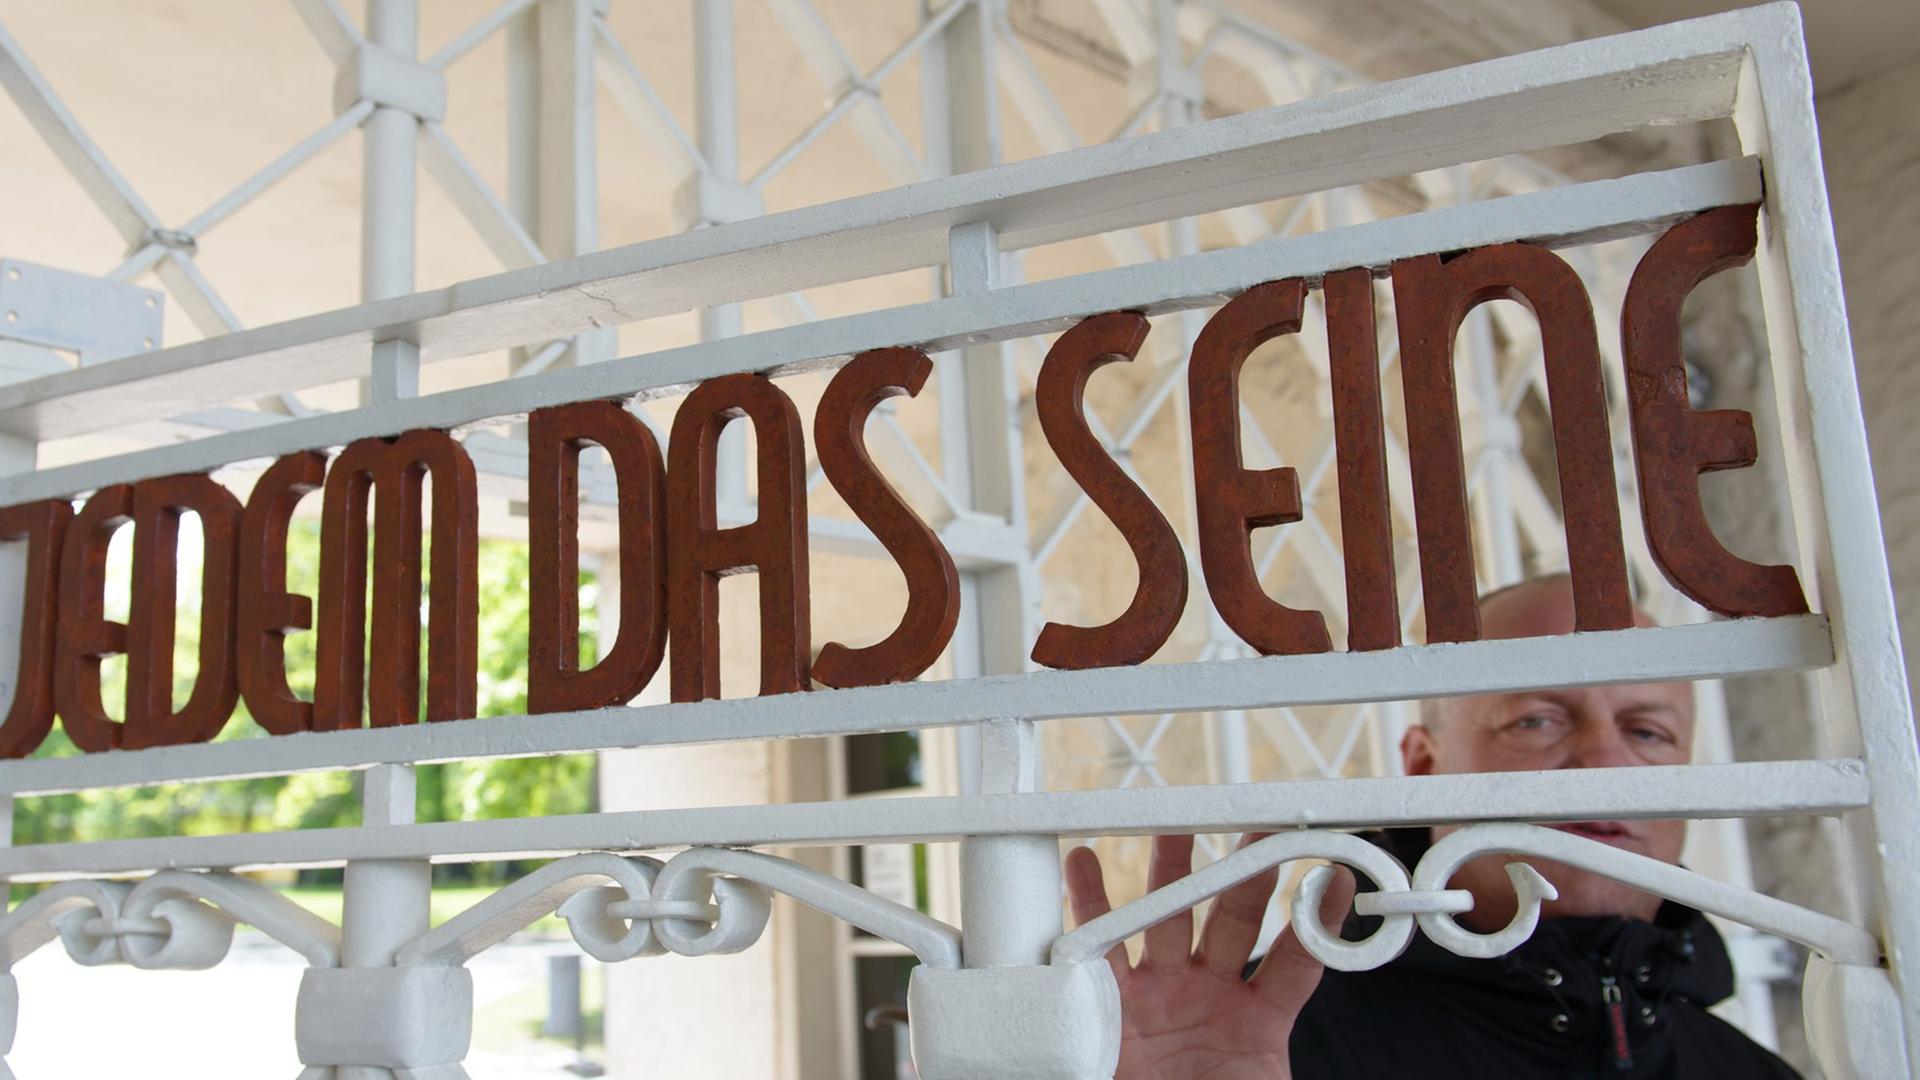 Restaurator Bernhard Mai steht in der Gedenkstätte Buchenwald am restaurierten und nach Befunden in den originalen Farben gestrichene Lagertor des ehemaligen Konzentrationslagers mit der Inschrift "Jedem das Seine".